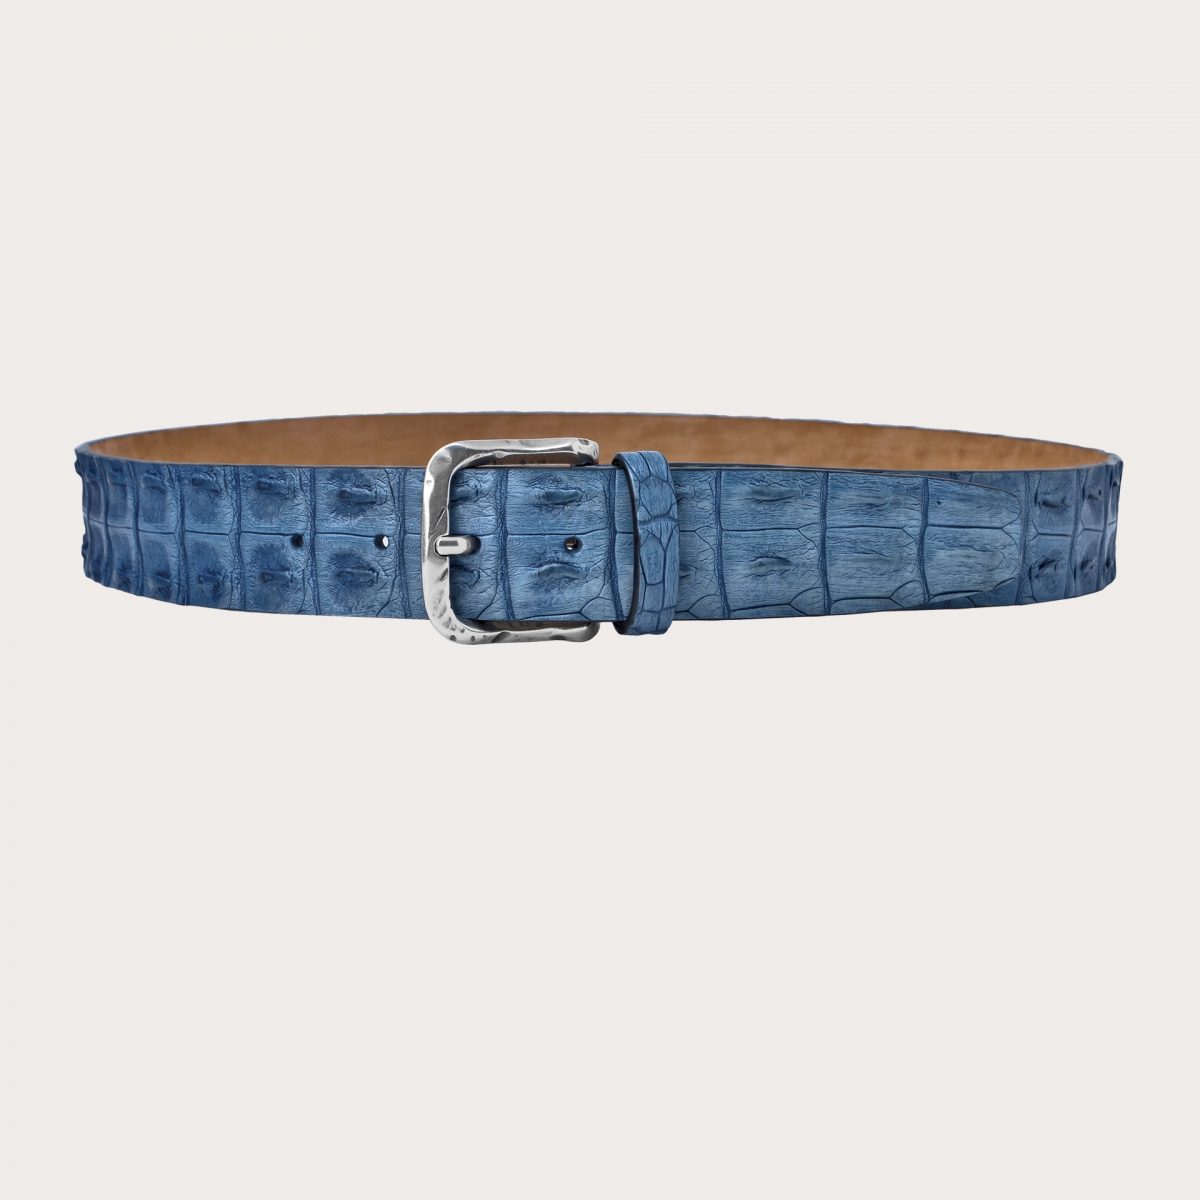 Cintura di coccodrillo blue jeans colorata e sfumata a mano